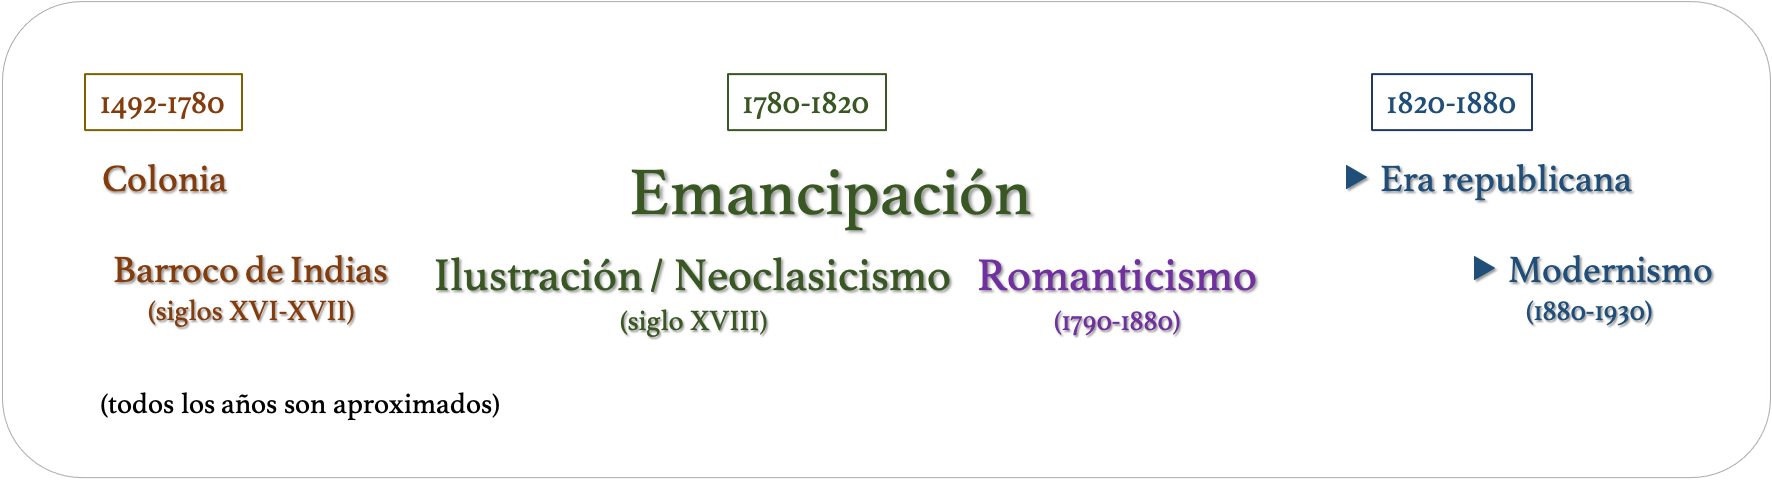 emancipacion-templine.png